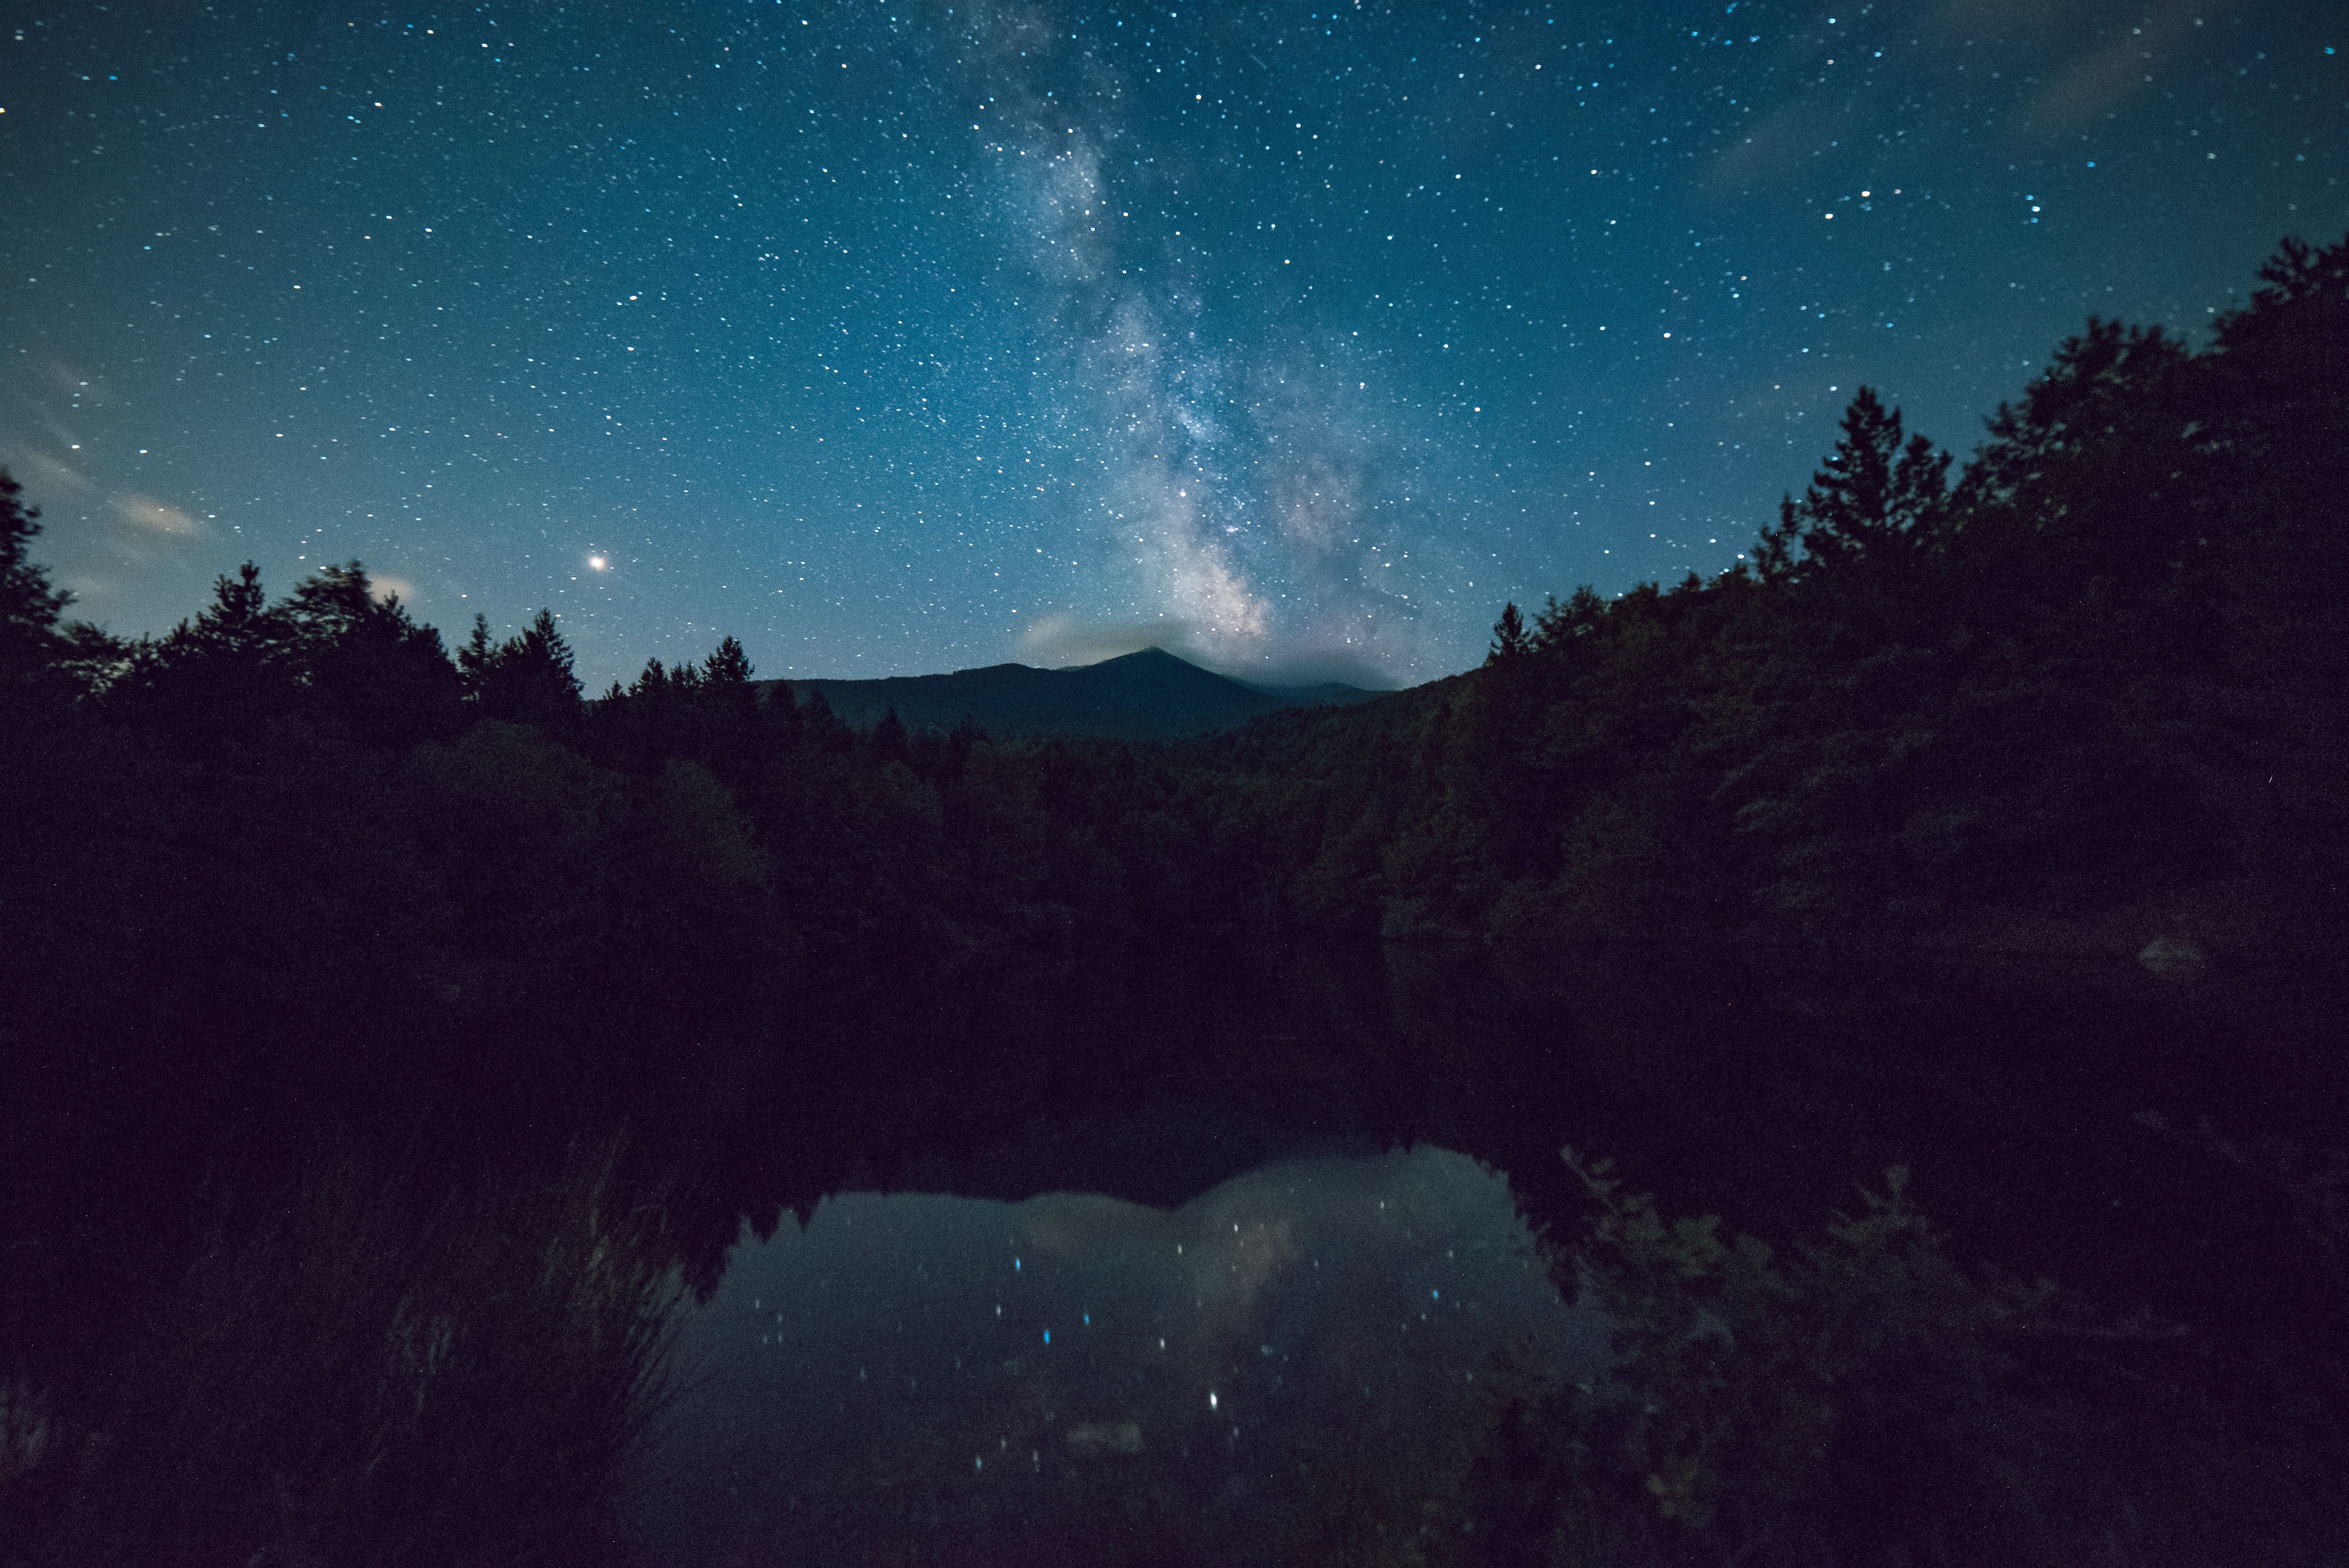 Скачать обои бесплатно Звезды, Ночь, Гора, Озеро, Земля/природа картинка на рабочий стол ПК